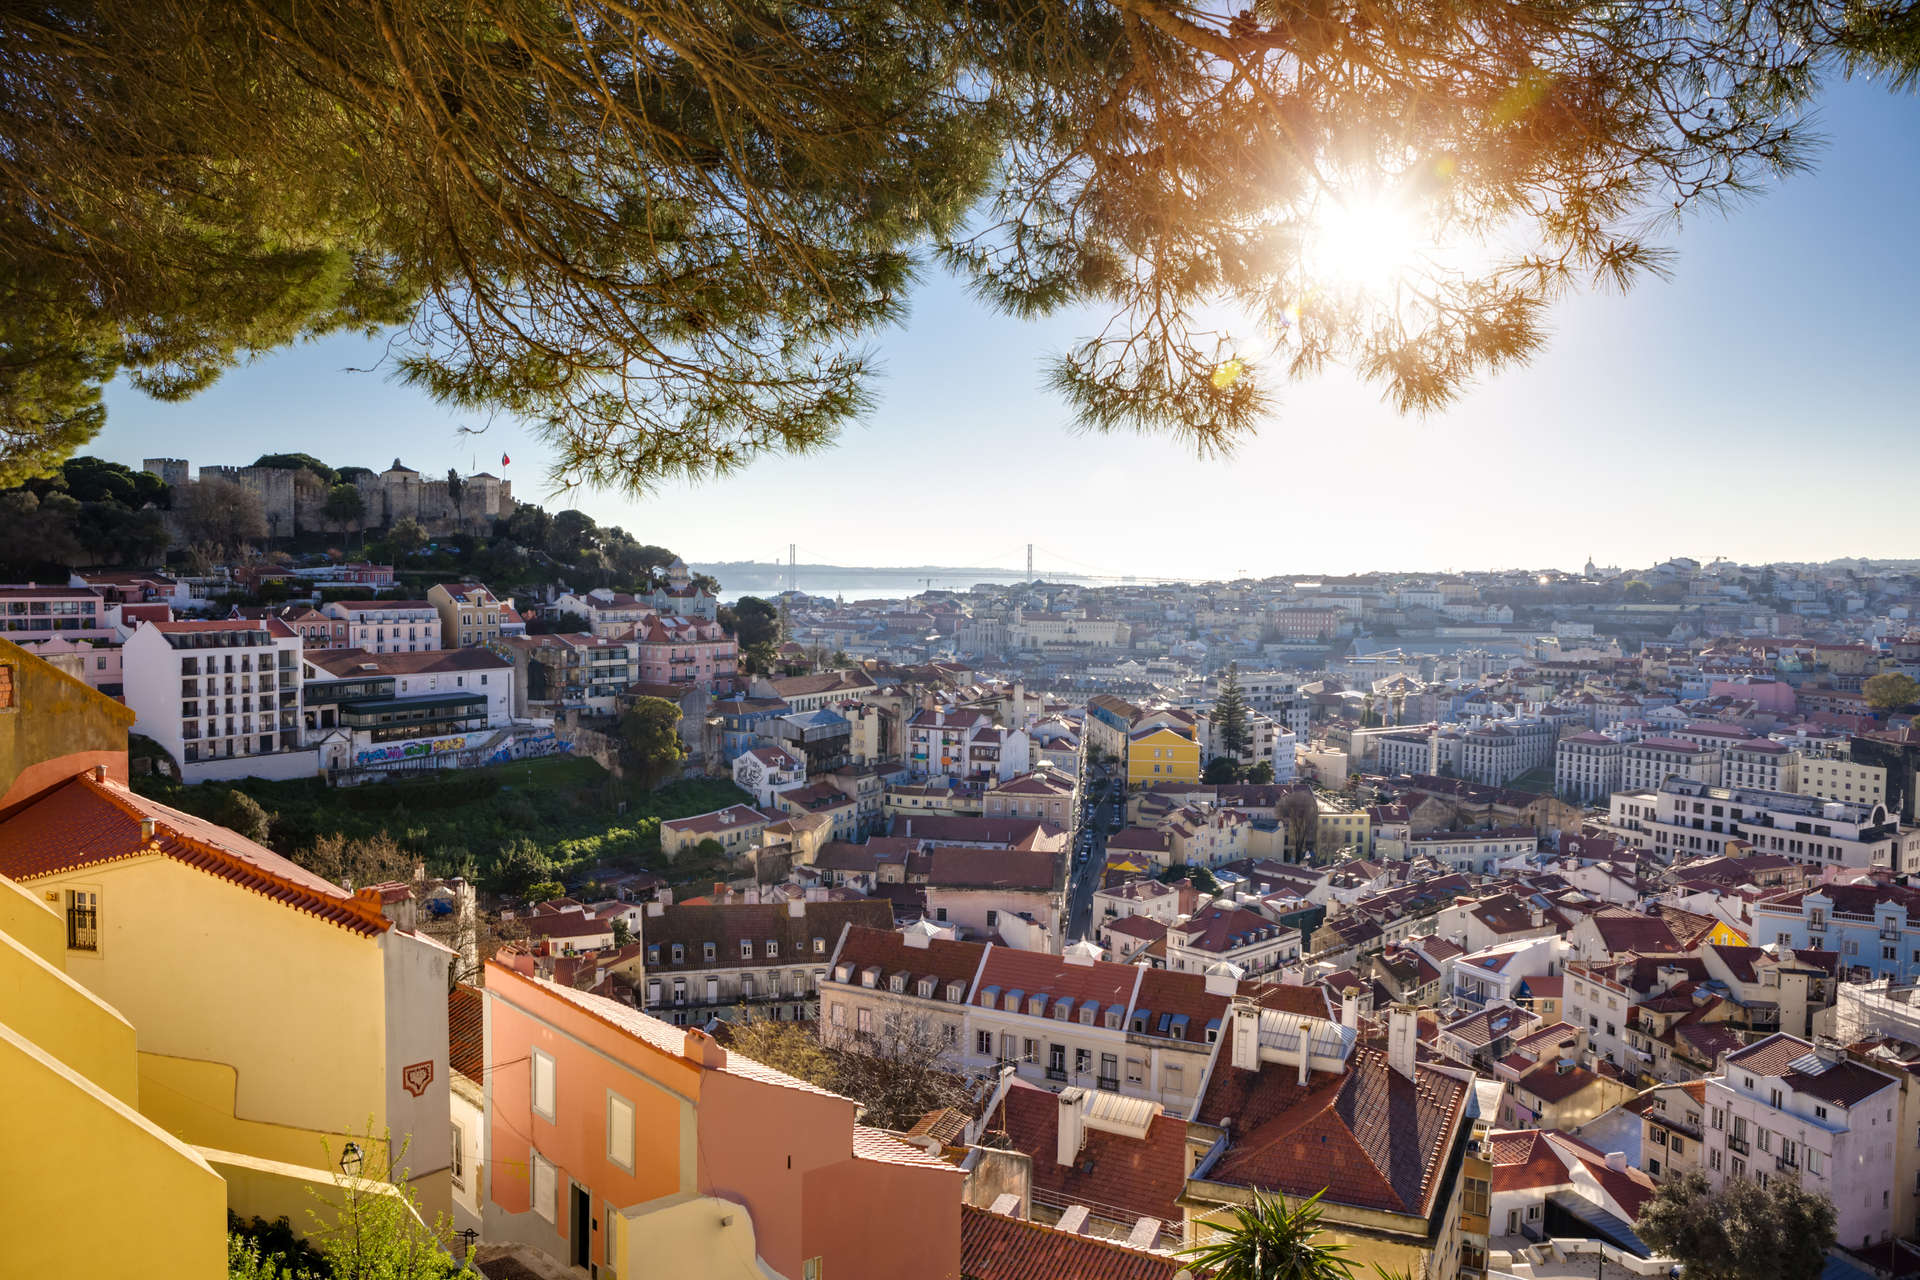 تجول في كل من التلال السبعة في لشبونة لتستكشف الخبايا الغامضة عاصمة البرتغال الجميلة (الصورة